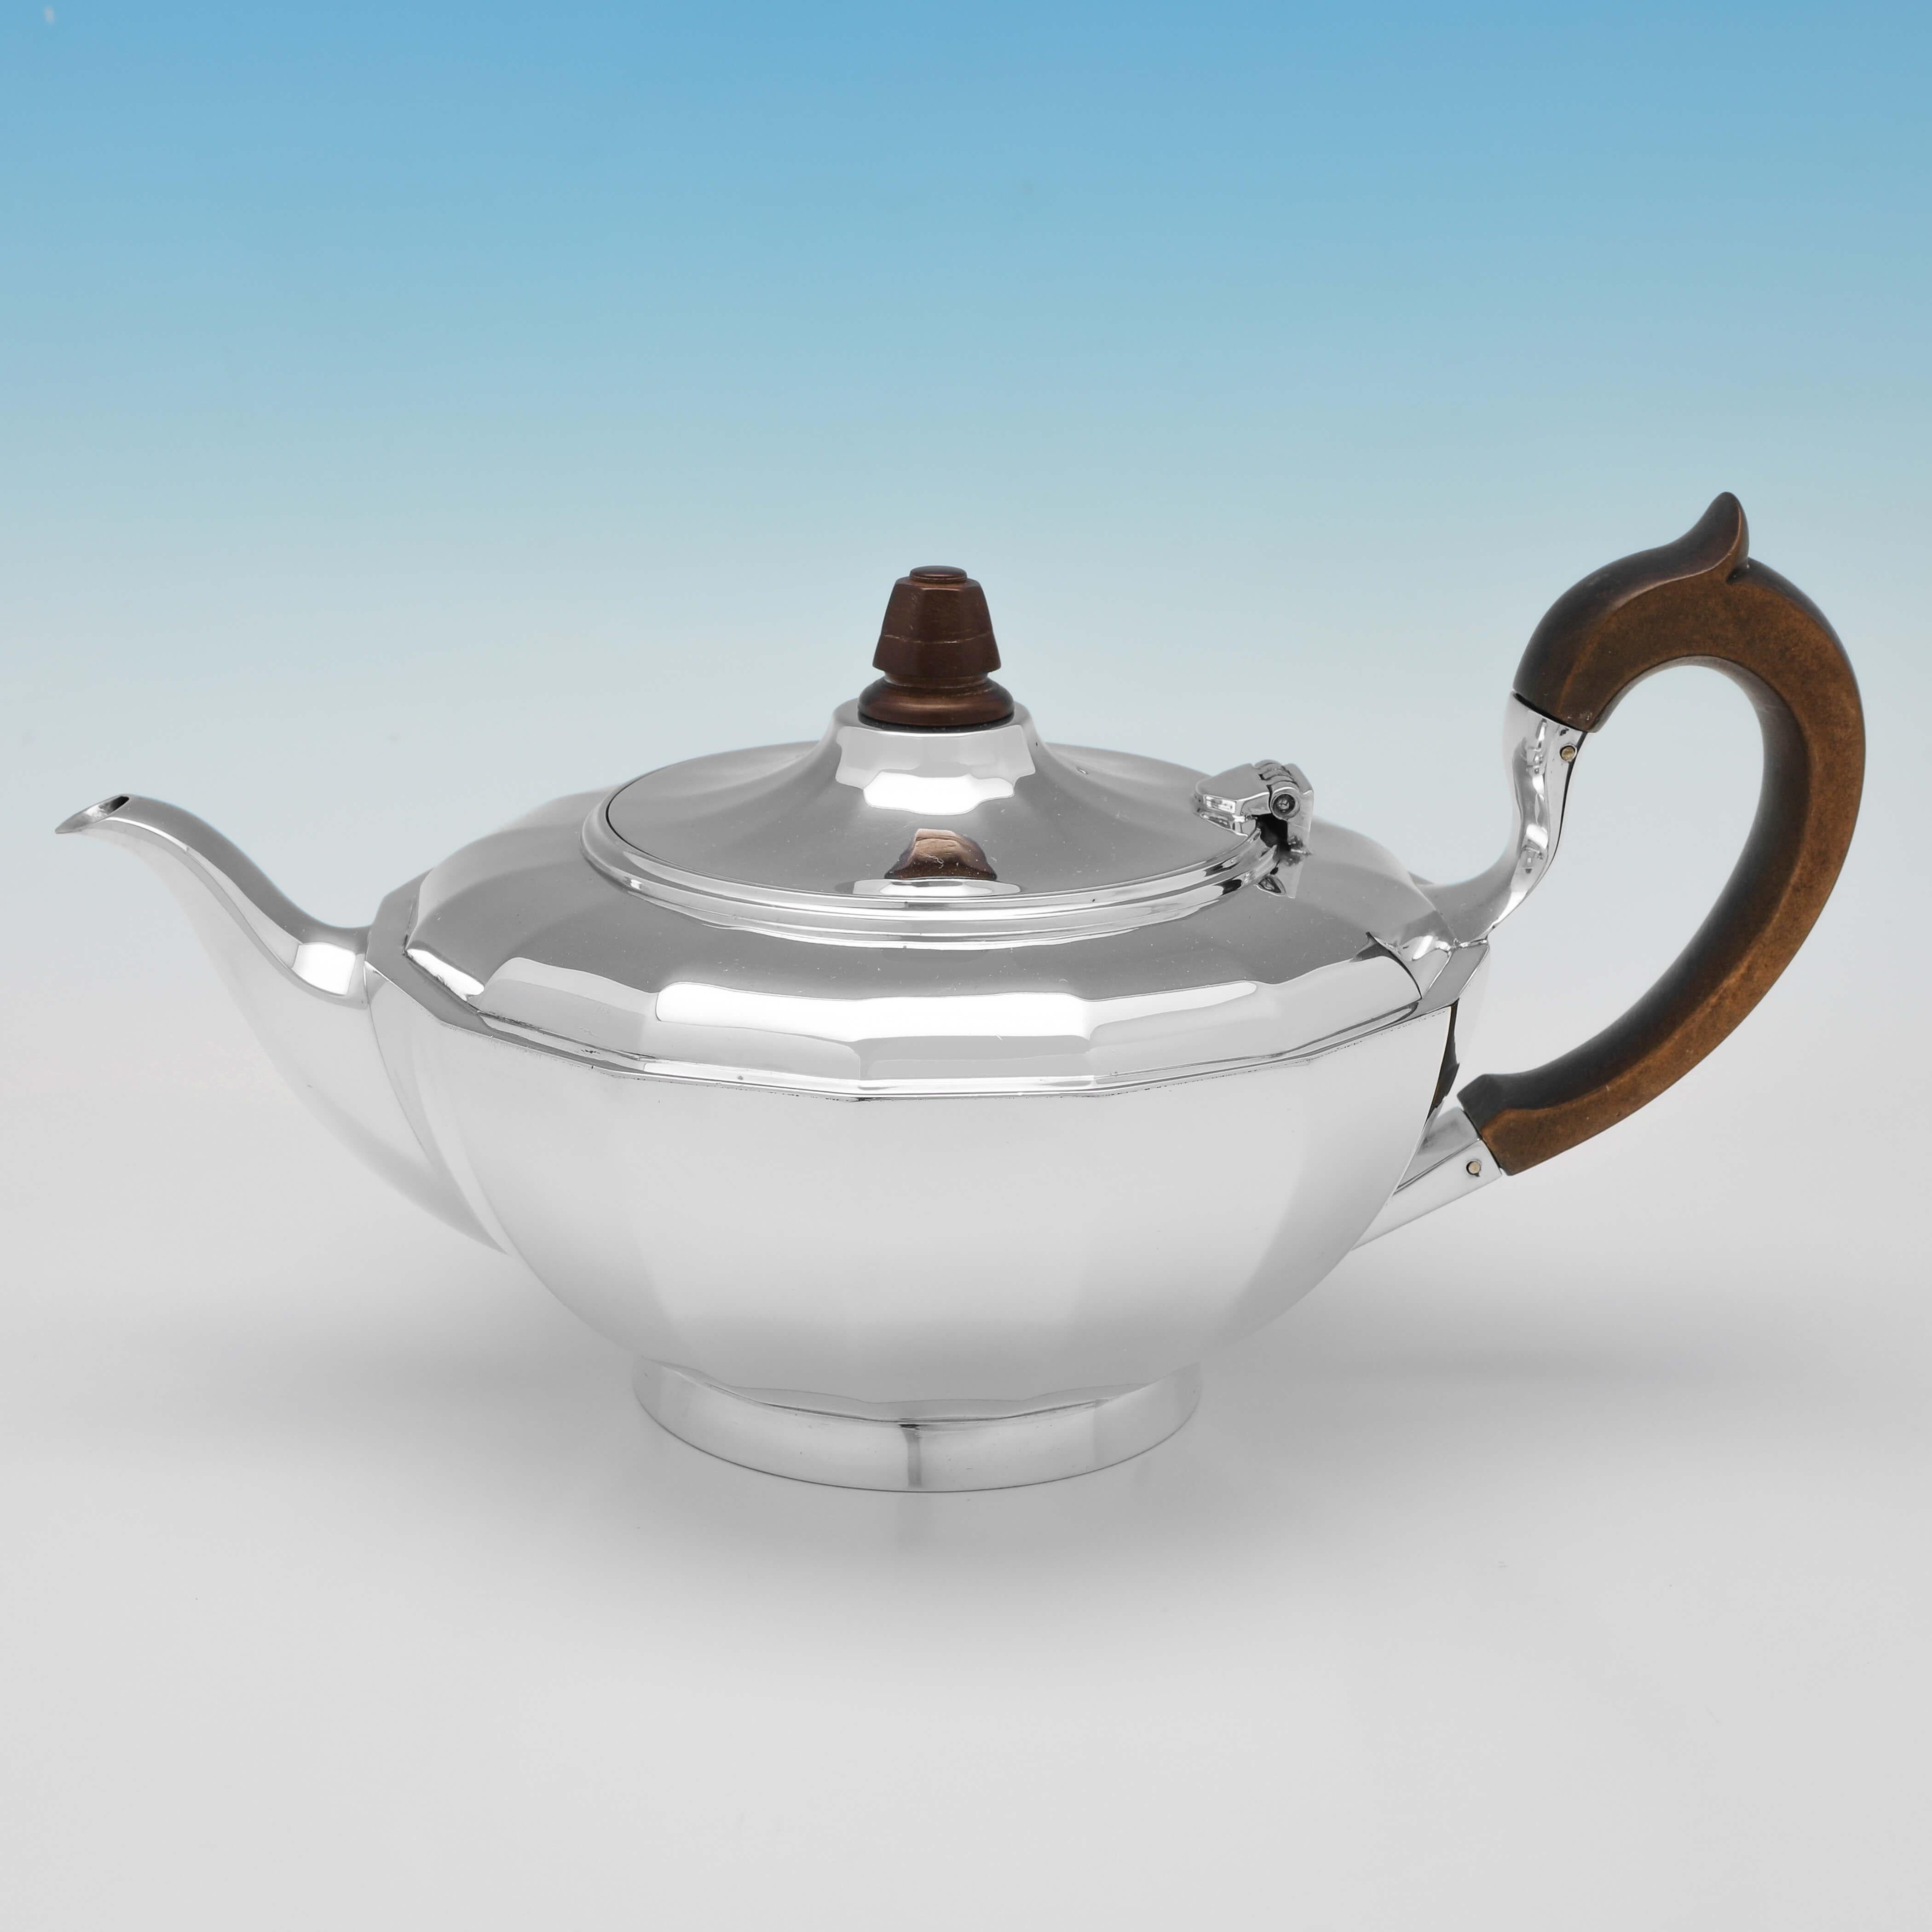 Poinçonné à Birmingham en 1918 et 19 par Elkington & Co, ce très beau service à thé ancien en argent sterling comprend une théière, un sucrier et un pot à crème, tous unis dans leur design, avec un panneau sur chacun d'eux, et une poignée et un